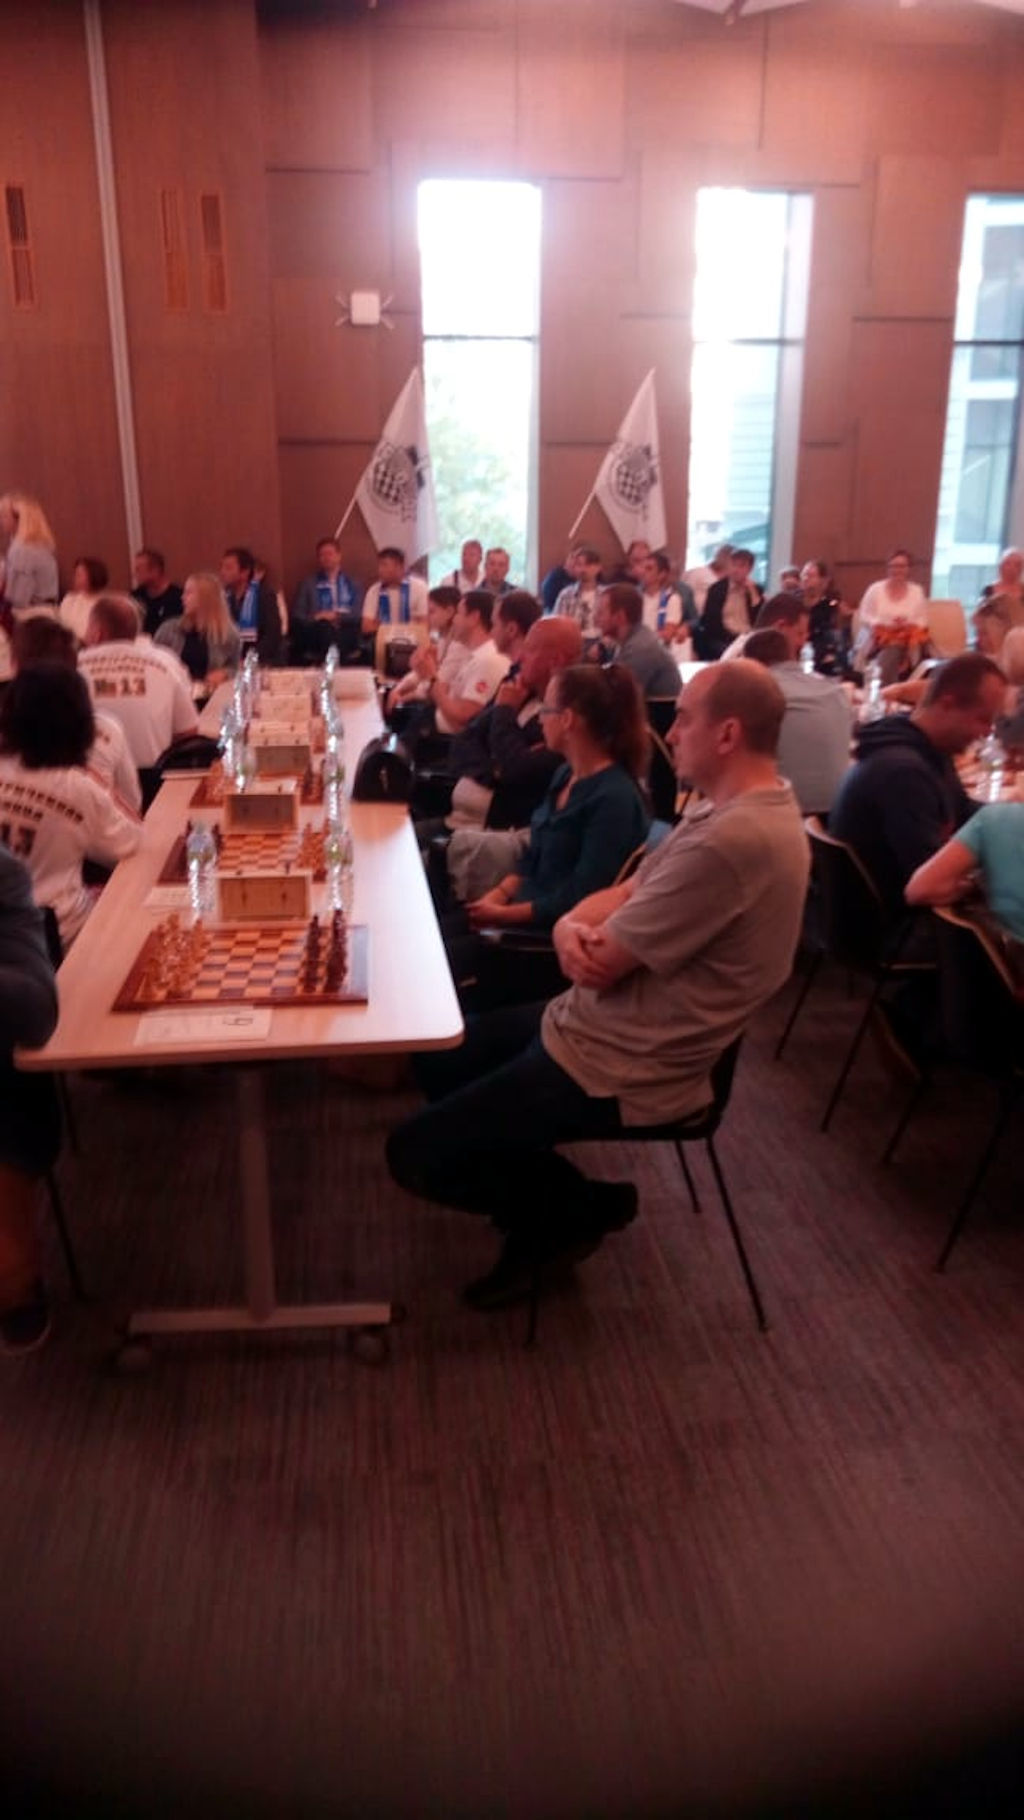 шахматный турнир между работниками больниц Департамента здравоохранения города Москвы